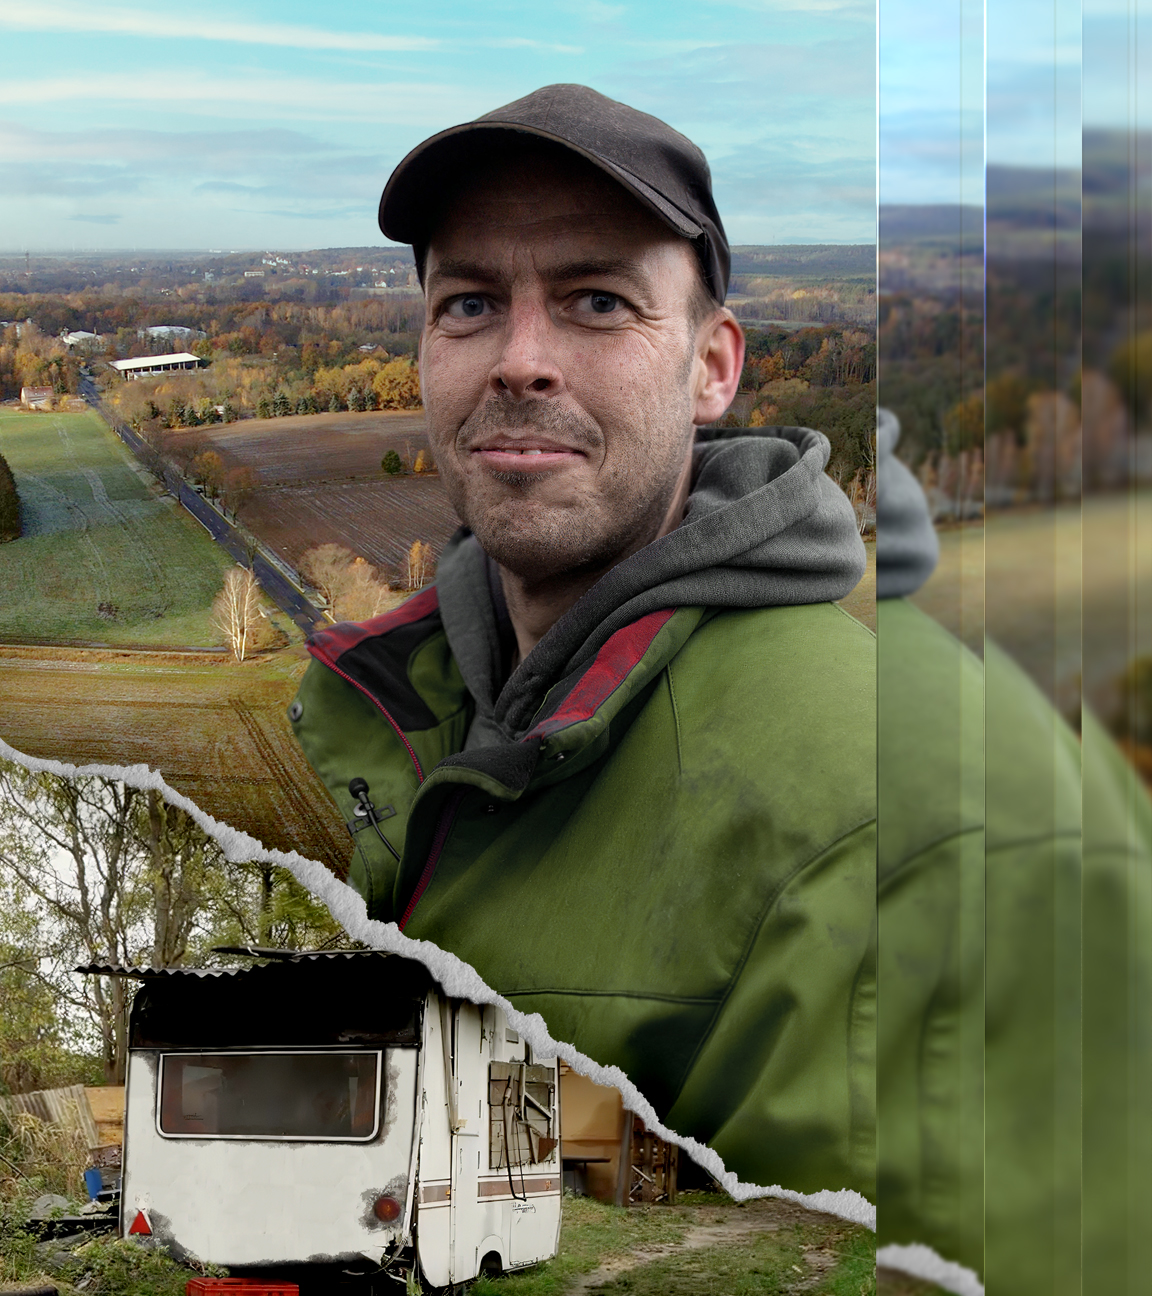 Mann mit Basecap vor einer Collage mit grüner Landschaft und seinem Wohnwagen links unten